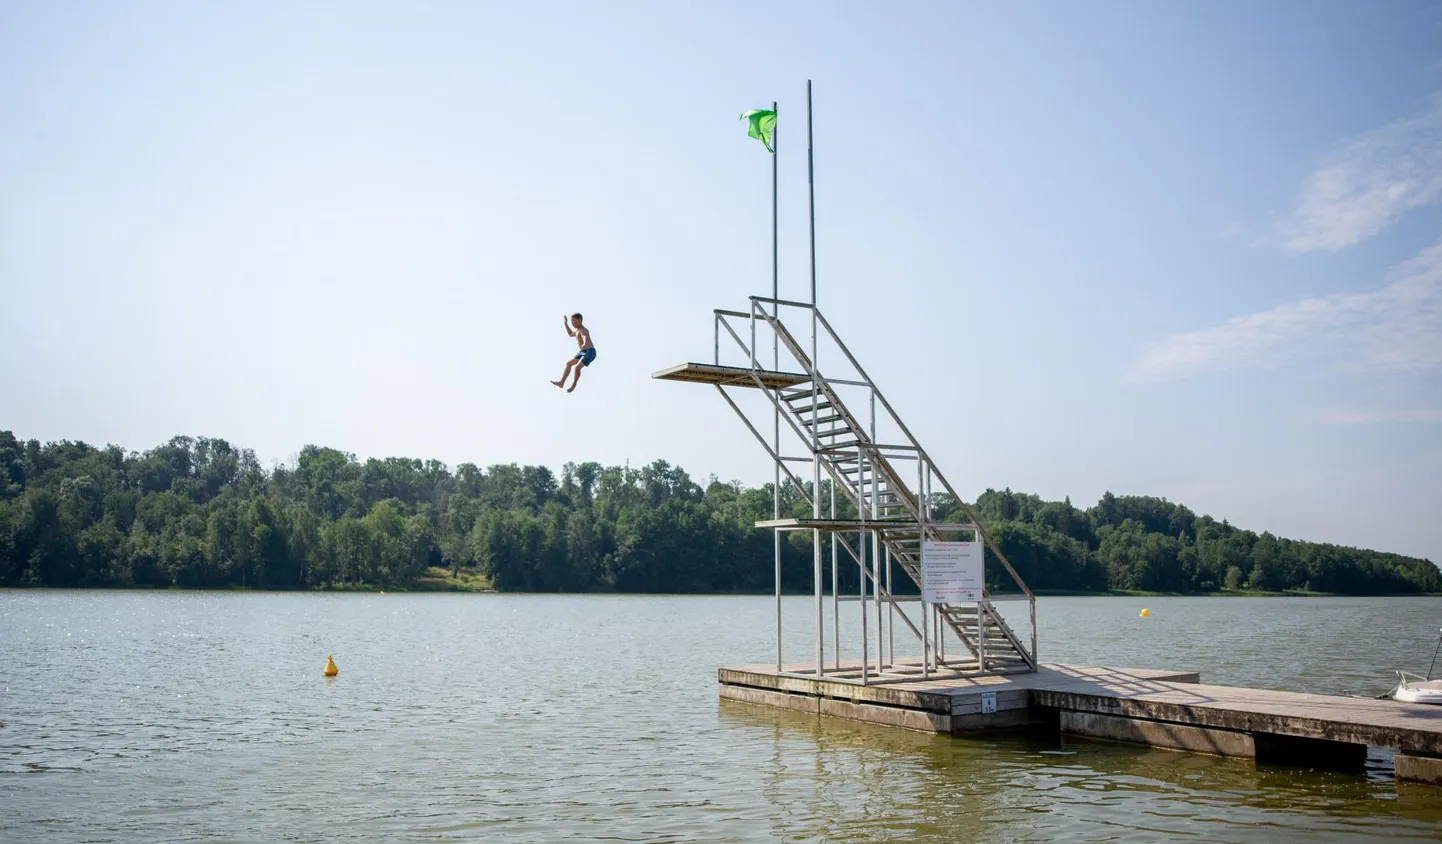 Viljandi järve populaarsus on kasvanud ja sestap kutsub linnavalitsus üles huvirühmade esindajaid arutama, kuidas kõik koos veekogu mugavalt kasutada saaksid. 